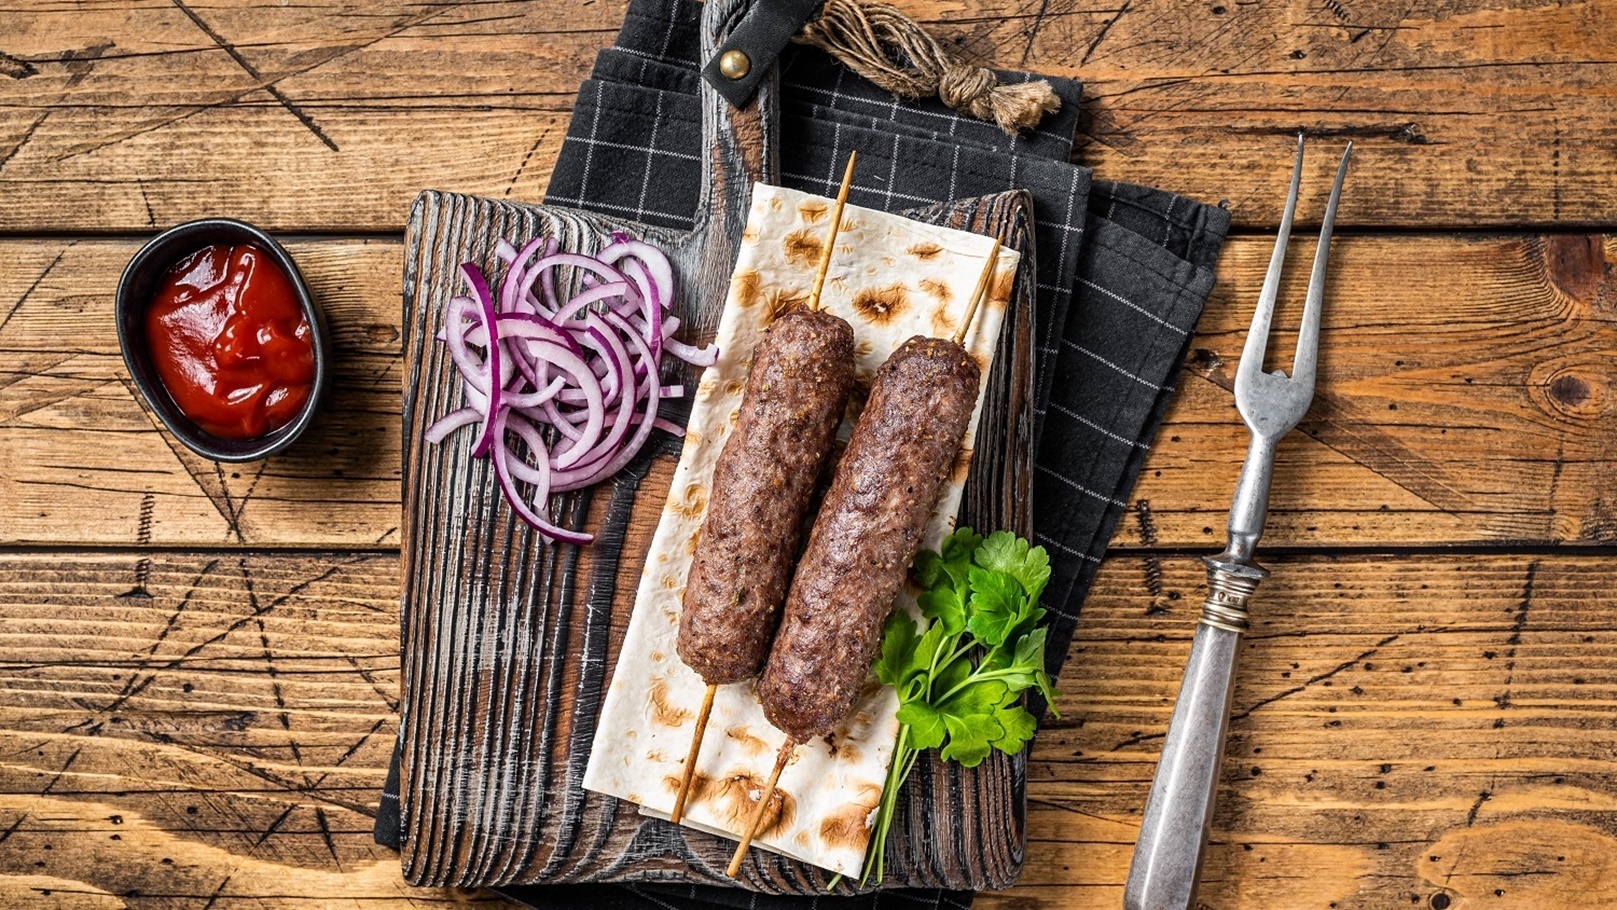 traditional-middle-east-kefta-kofta-kebab-from-gr-2022-03-15-14-11-45-utc